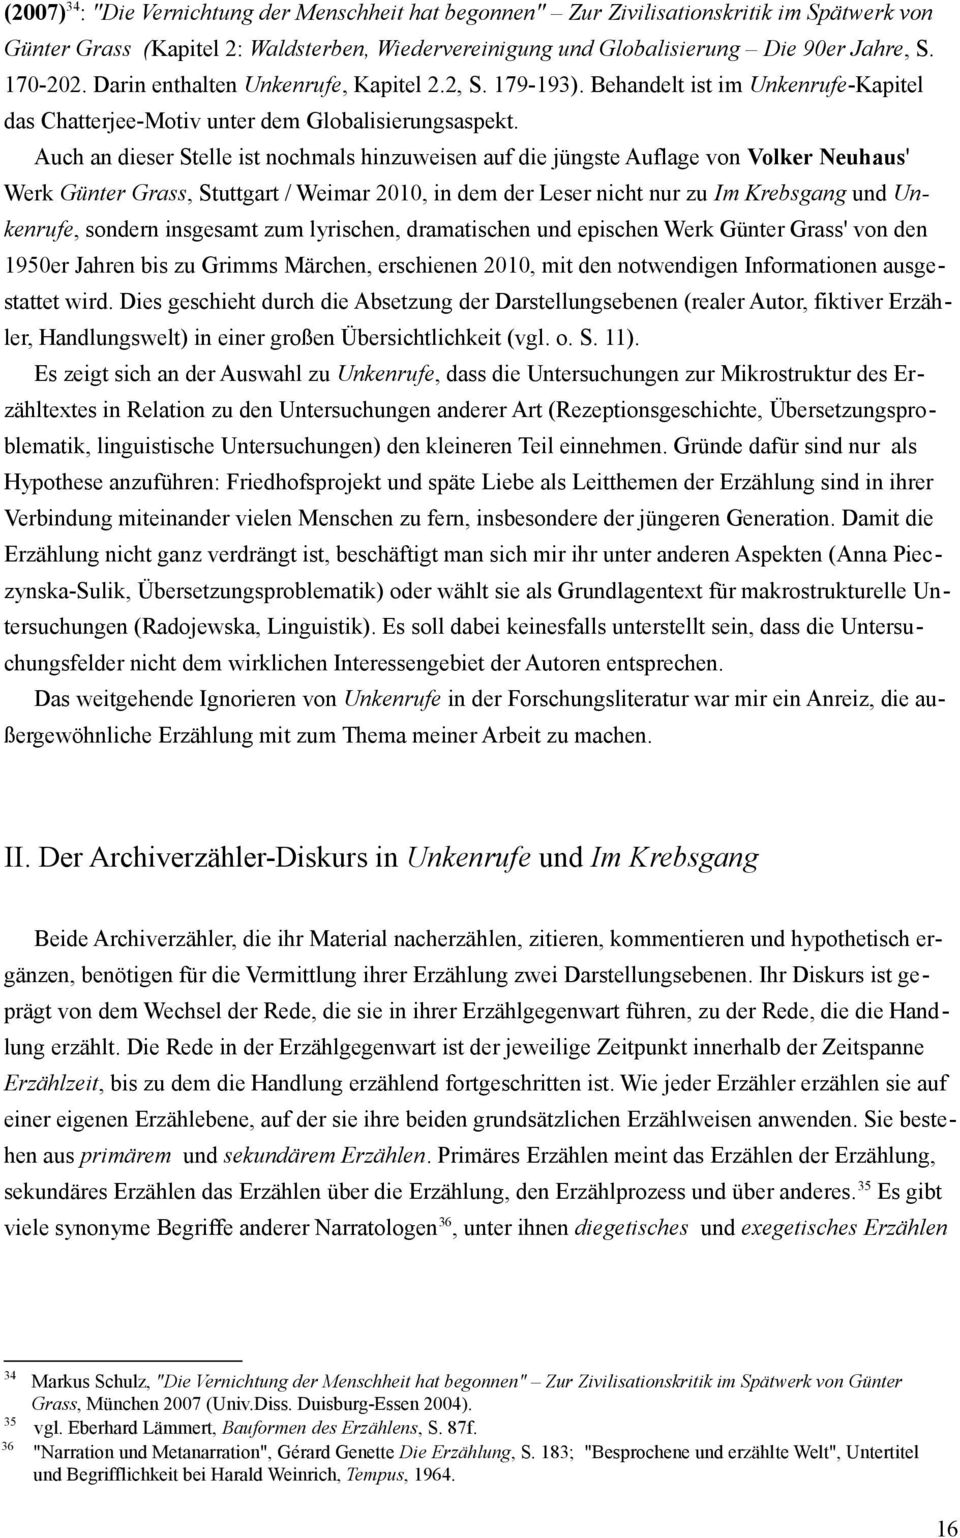 Auch an dieser Stelle ist nochmals hinzuweisen auf die jüngste Auflage von Volker Neuhaus' Werk Günter Grass, Stuttgart / Weimar 2010, in dem der Leser nicht nur zu Im Krebsgang und Unkenrufe,